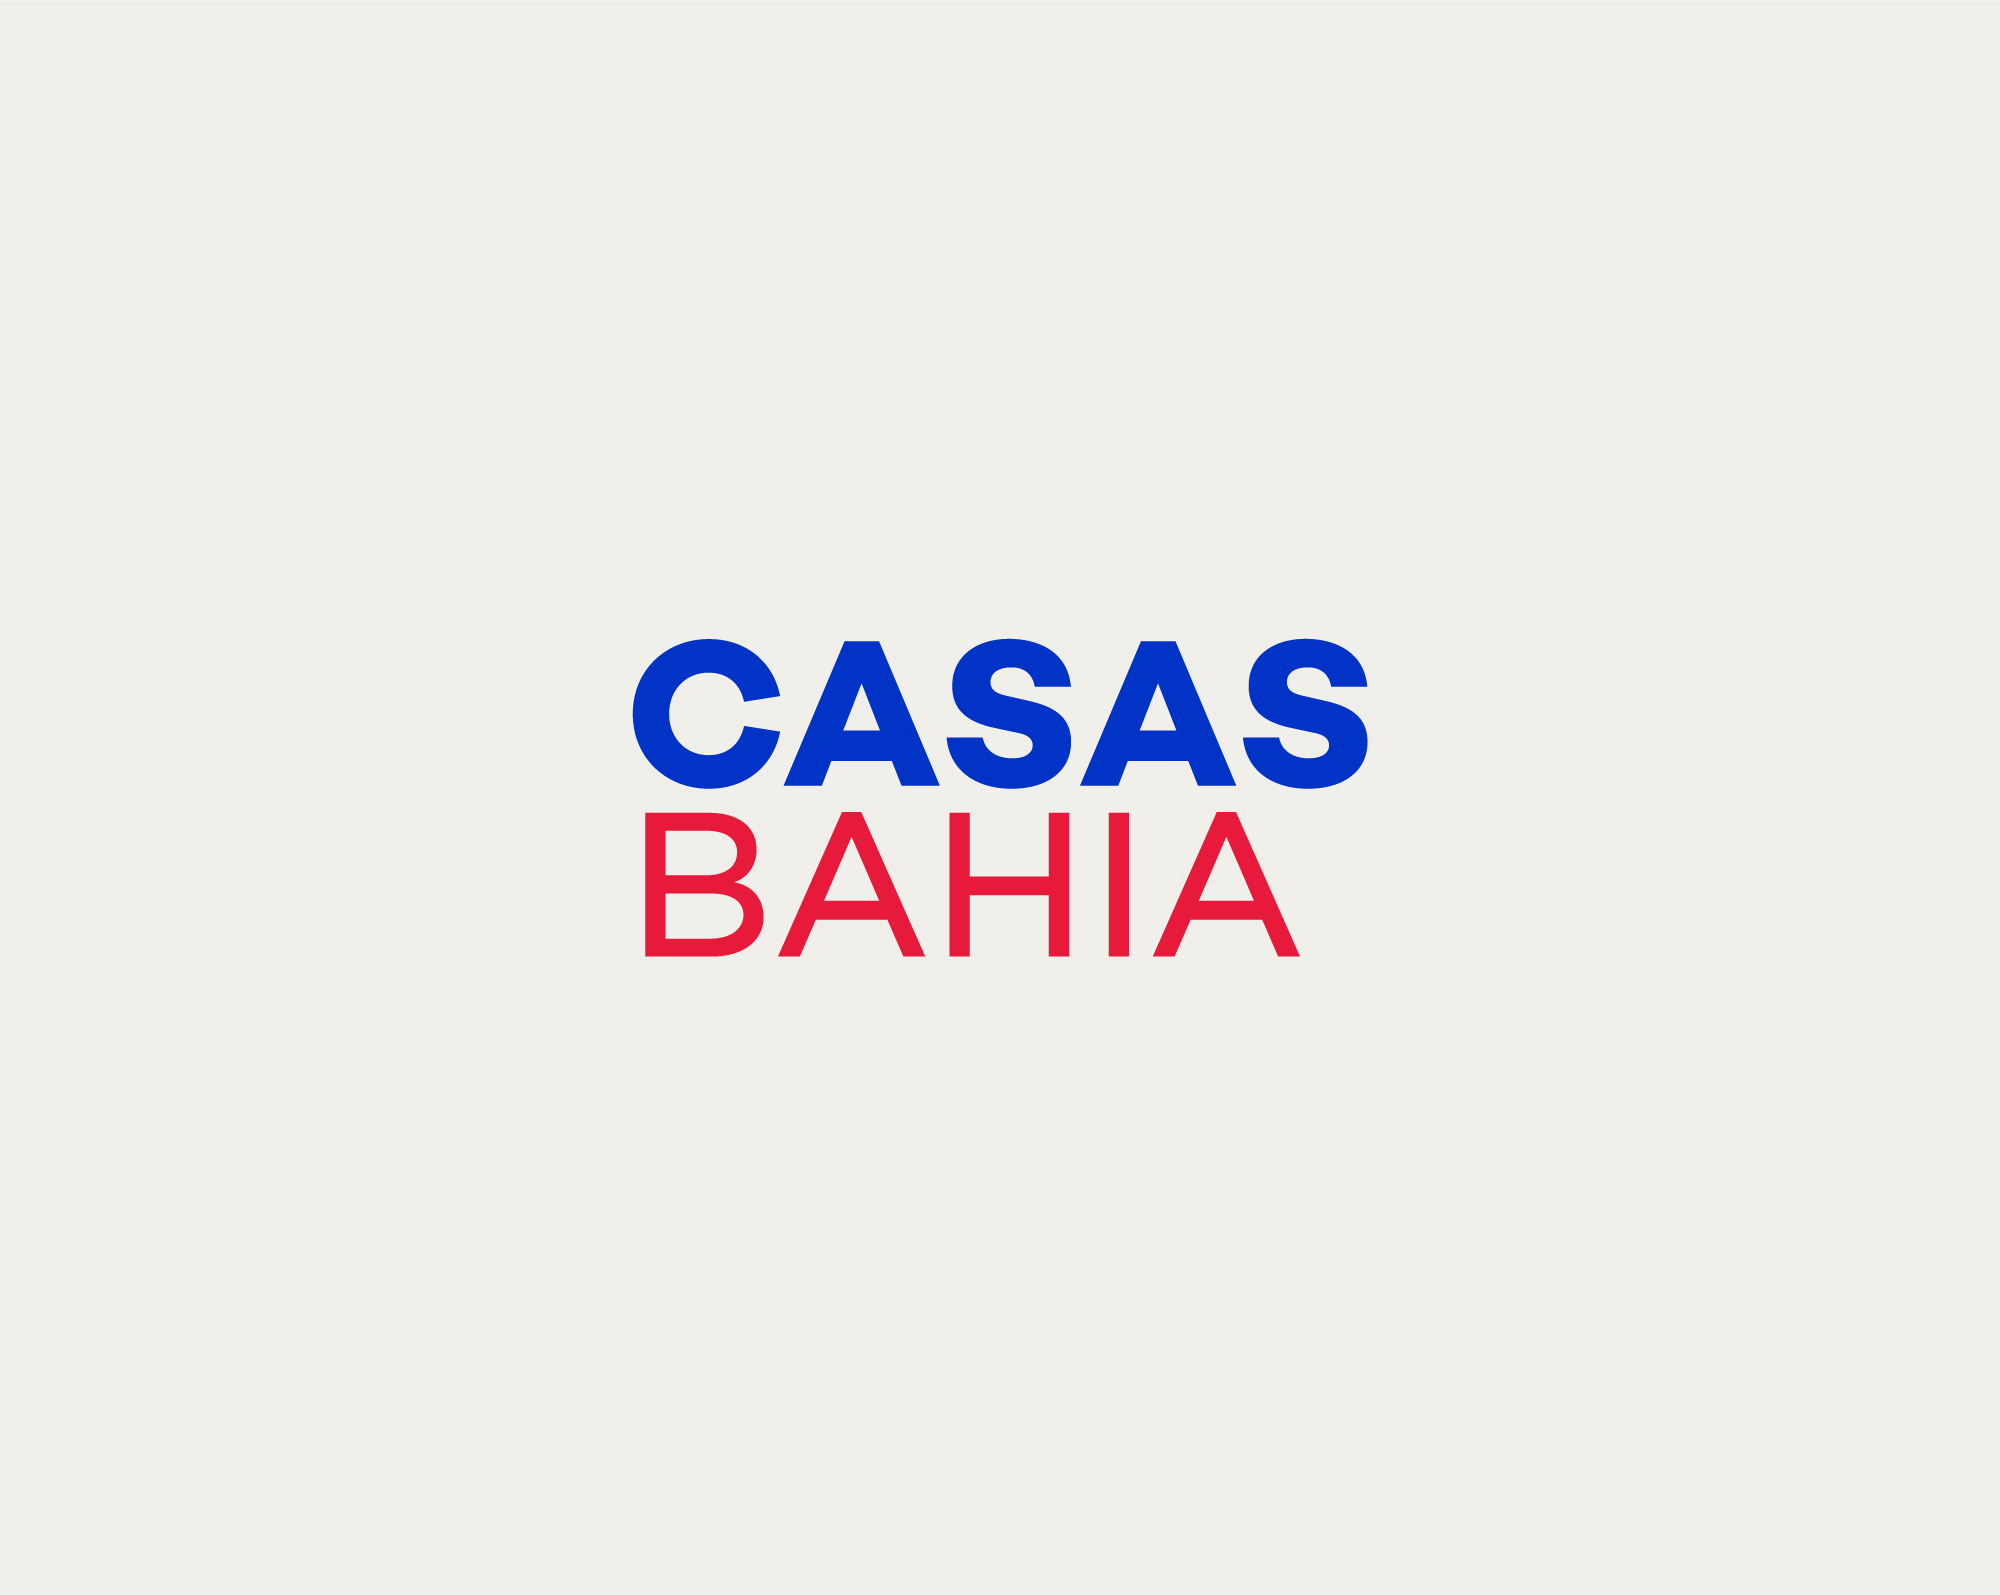 Guarda Roupa Casas Bahia: Organize seu quarto com estilo e praticidade